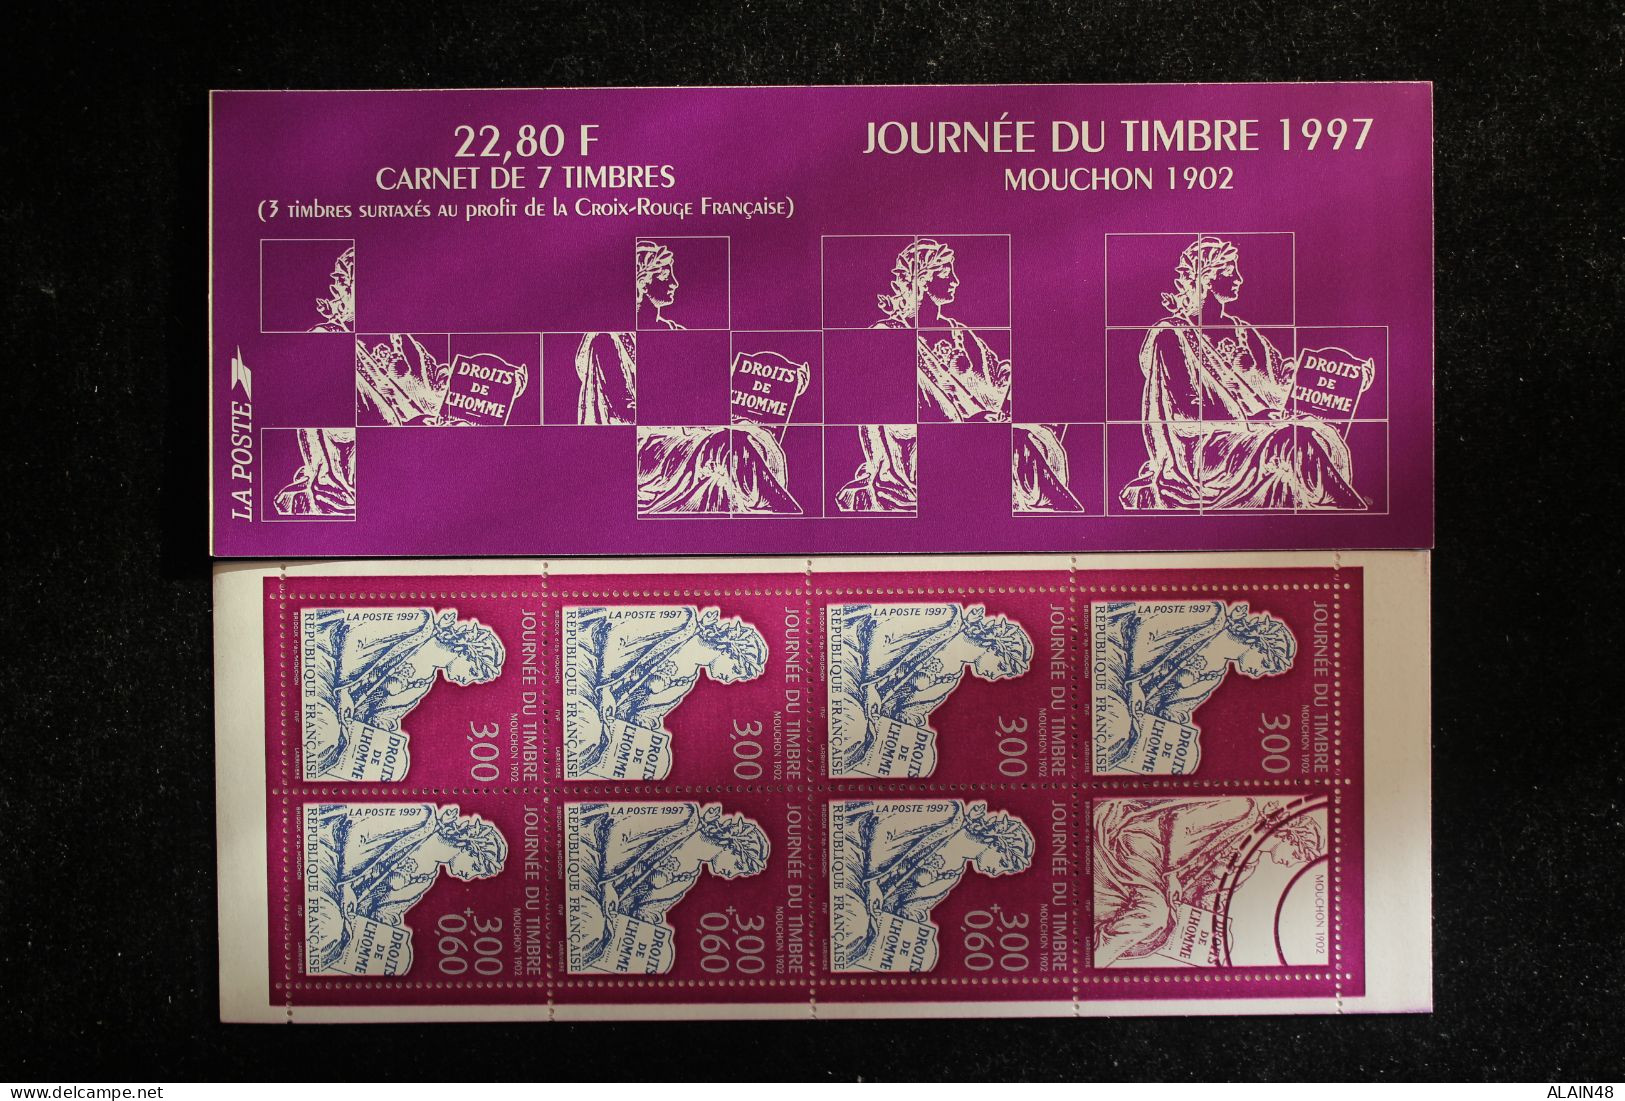 FRANCE 1997 CARNET BC3053 JOURNEE DU TIMBRE NEUFS** NON PLIE TTB MOUCHON 1902 - Stamp Day